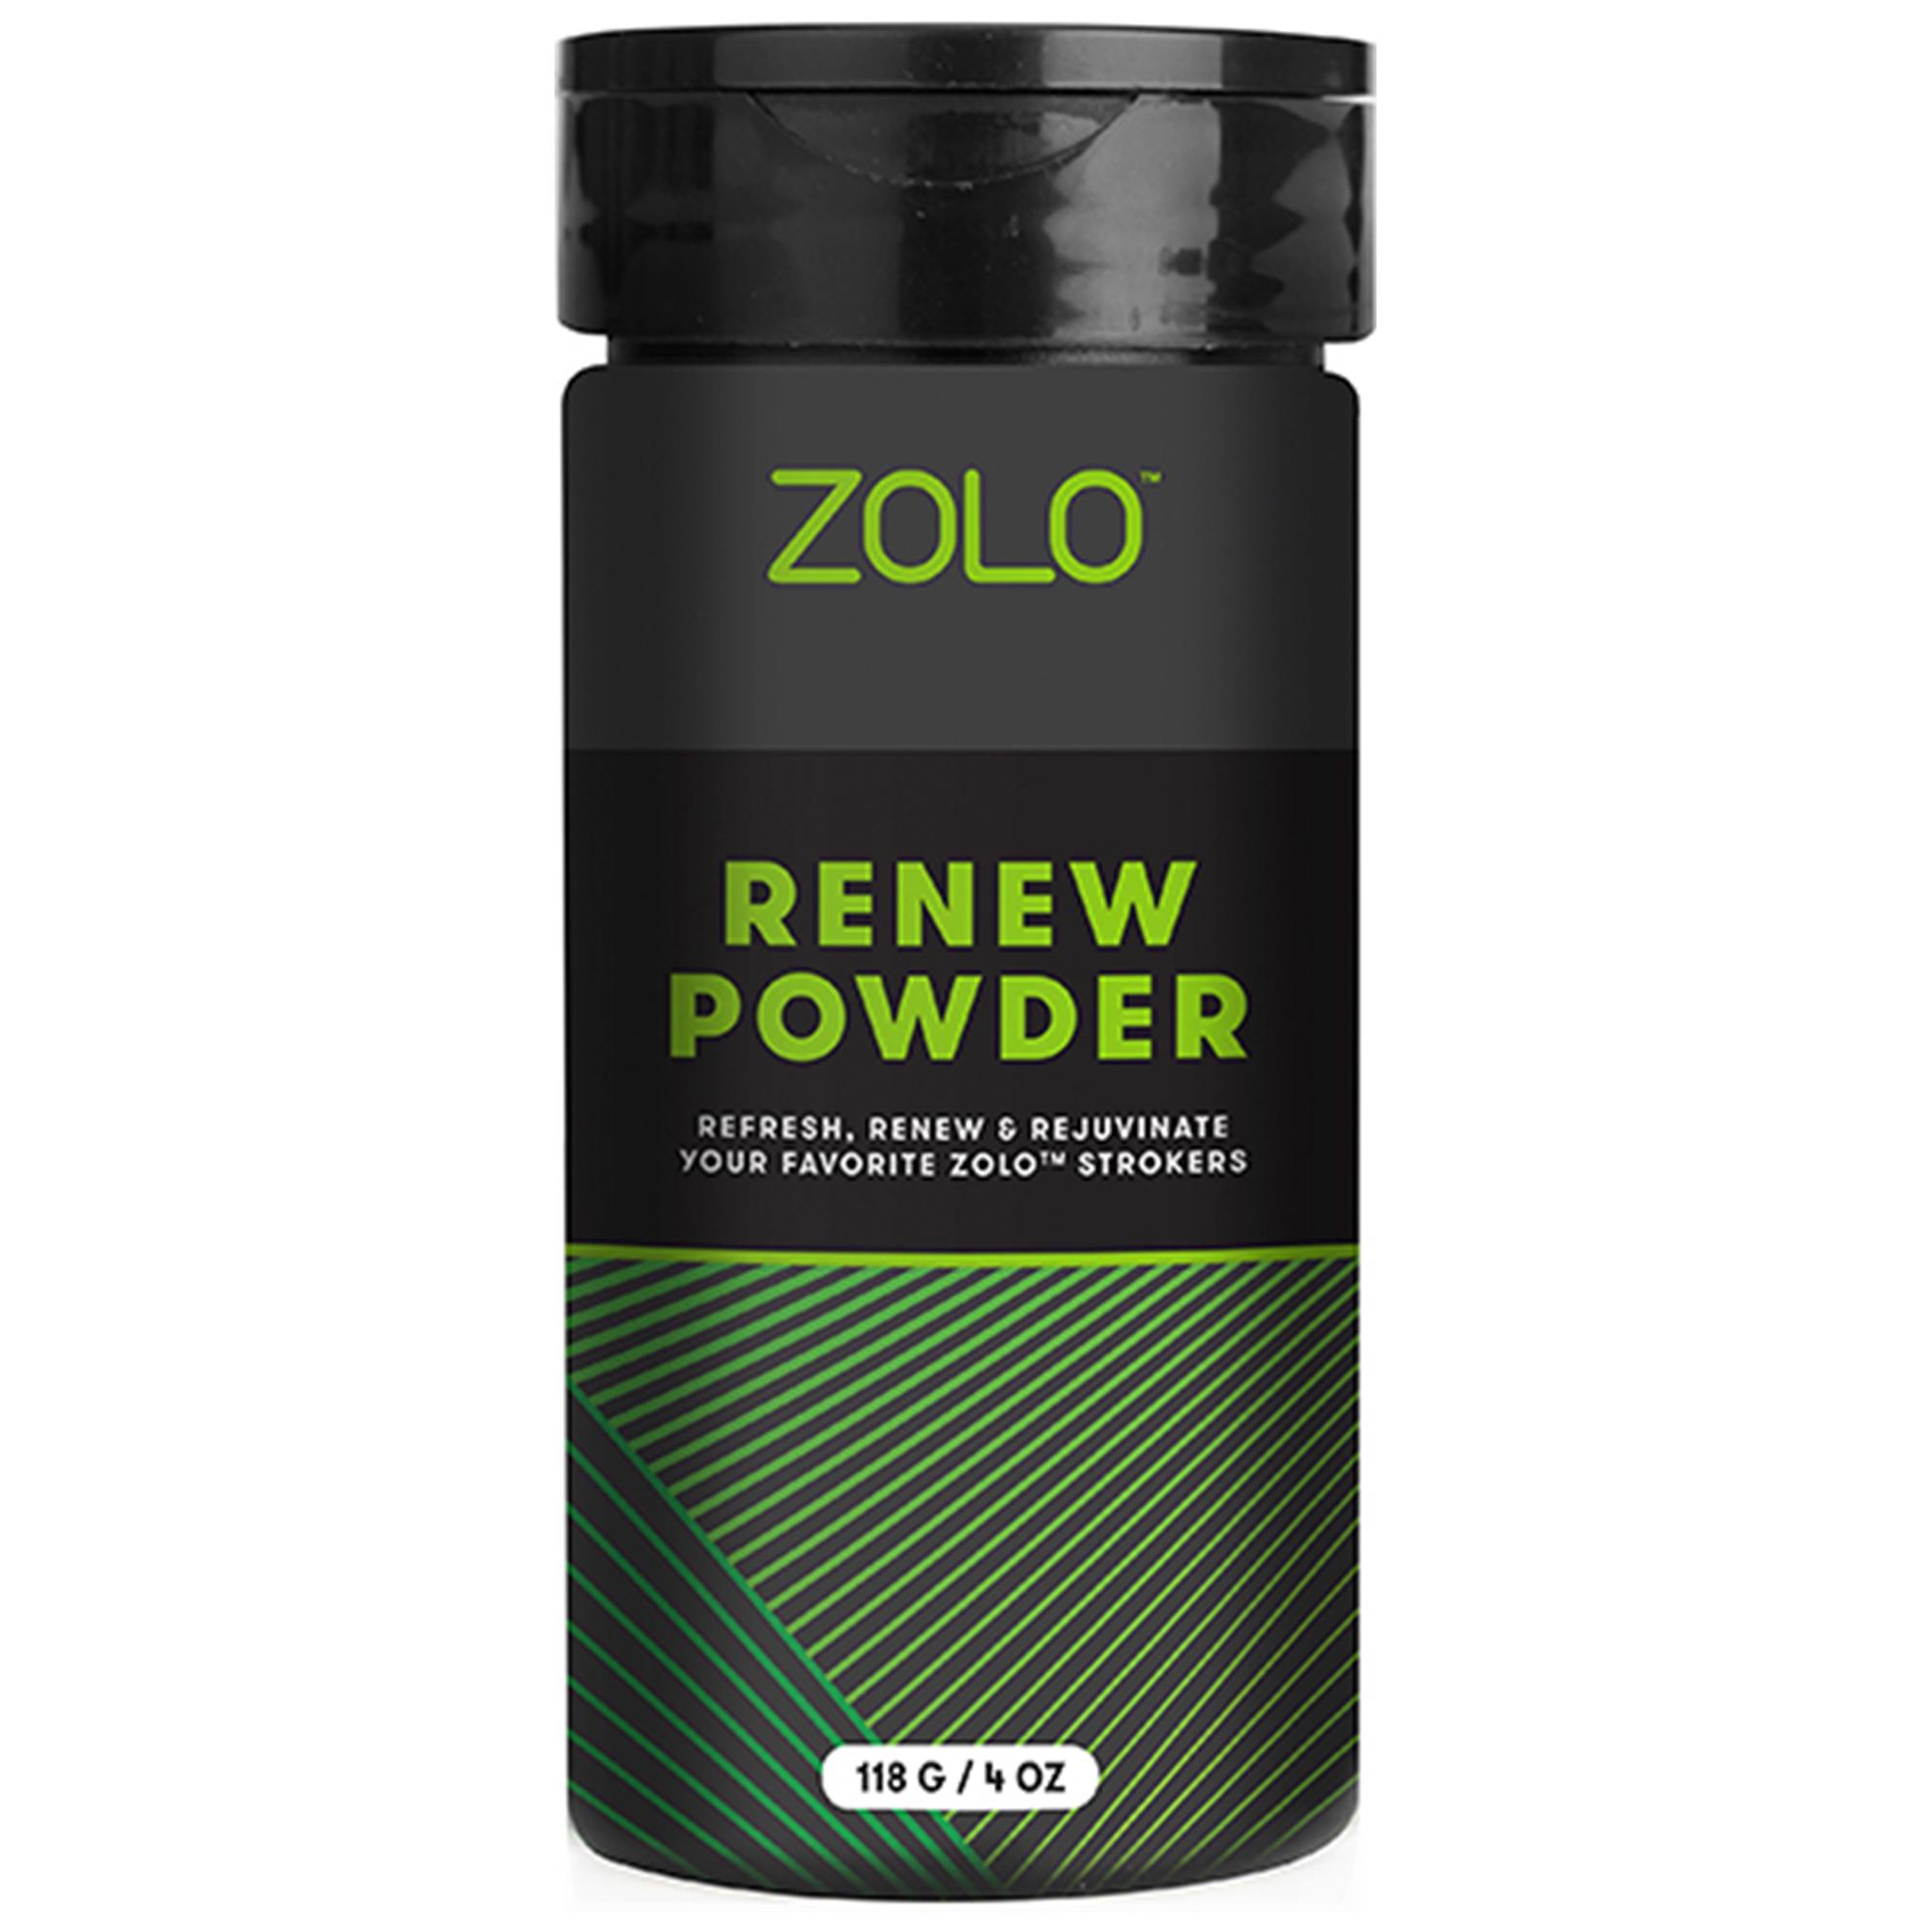 Zolo Renew Powder 118g | Hygien | Intimast